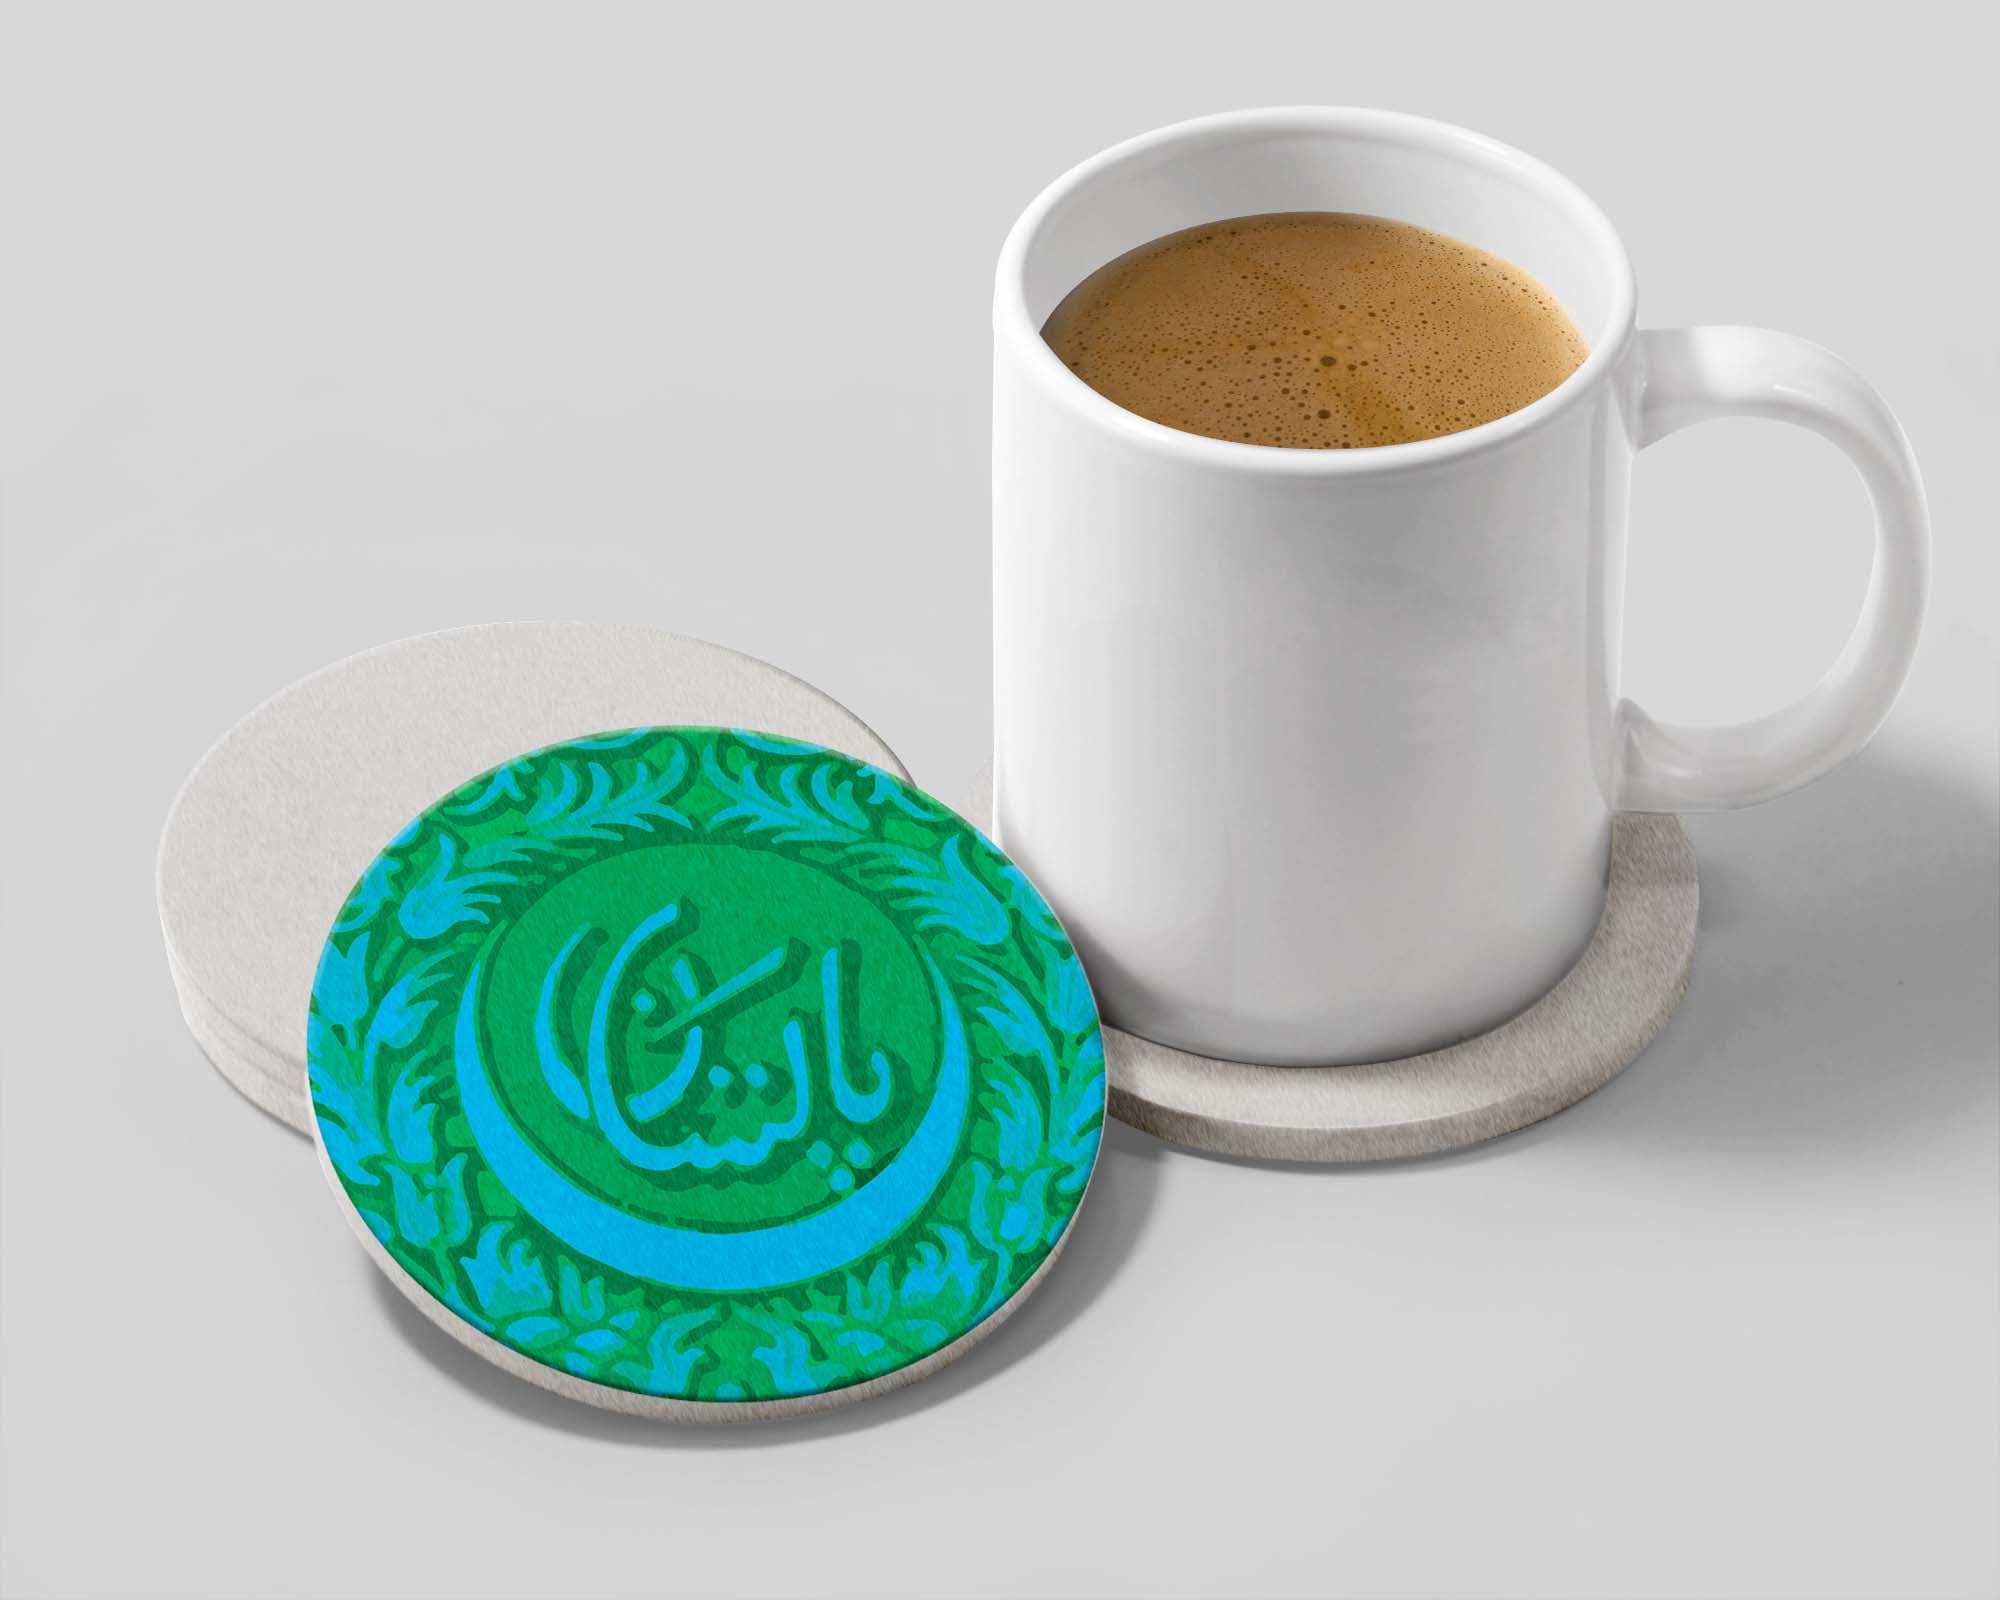 Pakistan Special Tea coasters